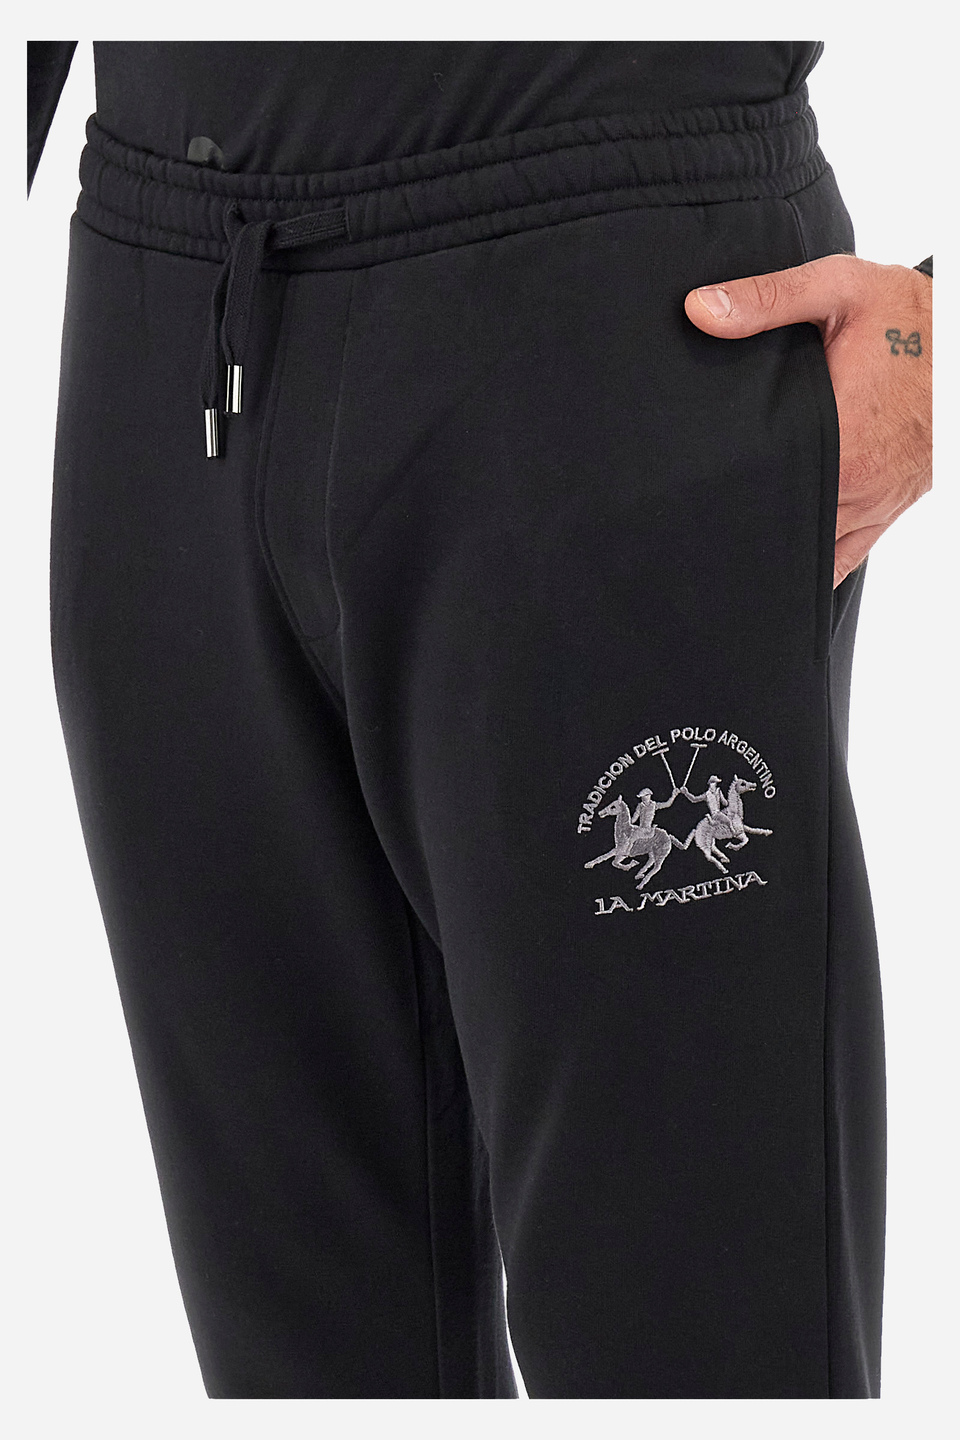 Pantalones de jogging hombre corte recto - Wallas | La Martina - Official Online Shop